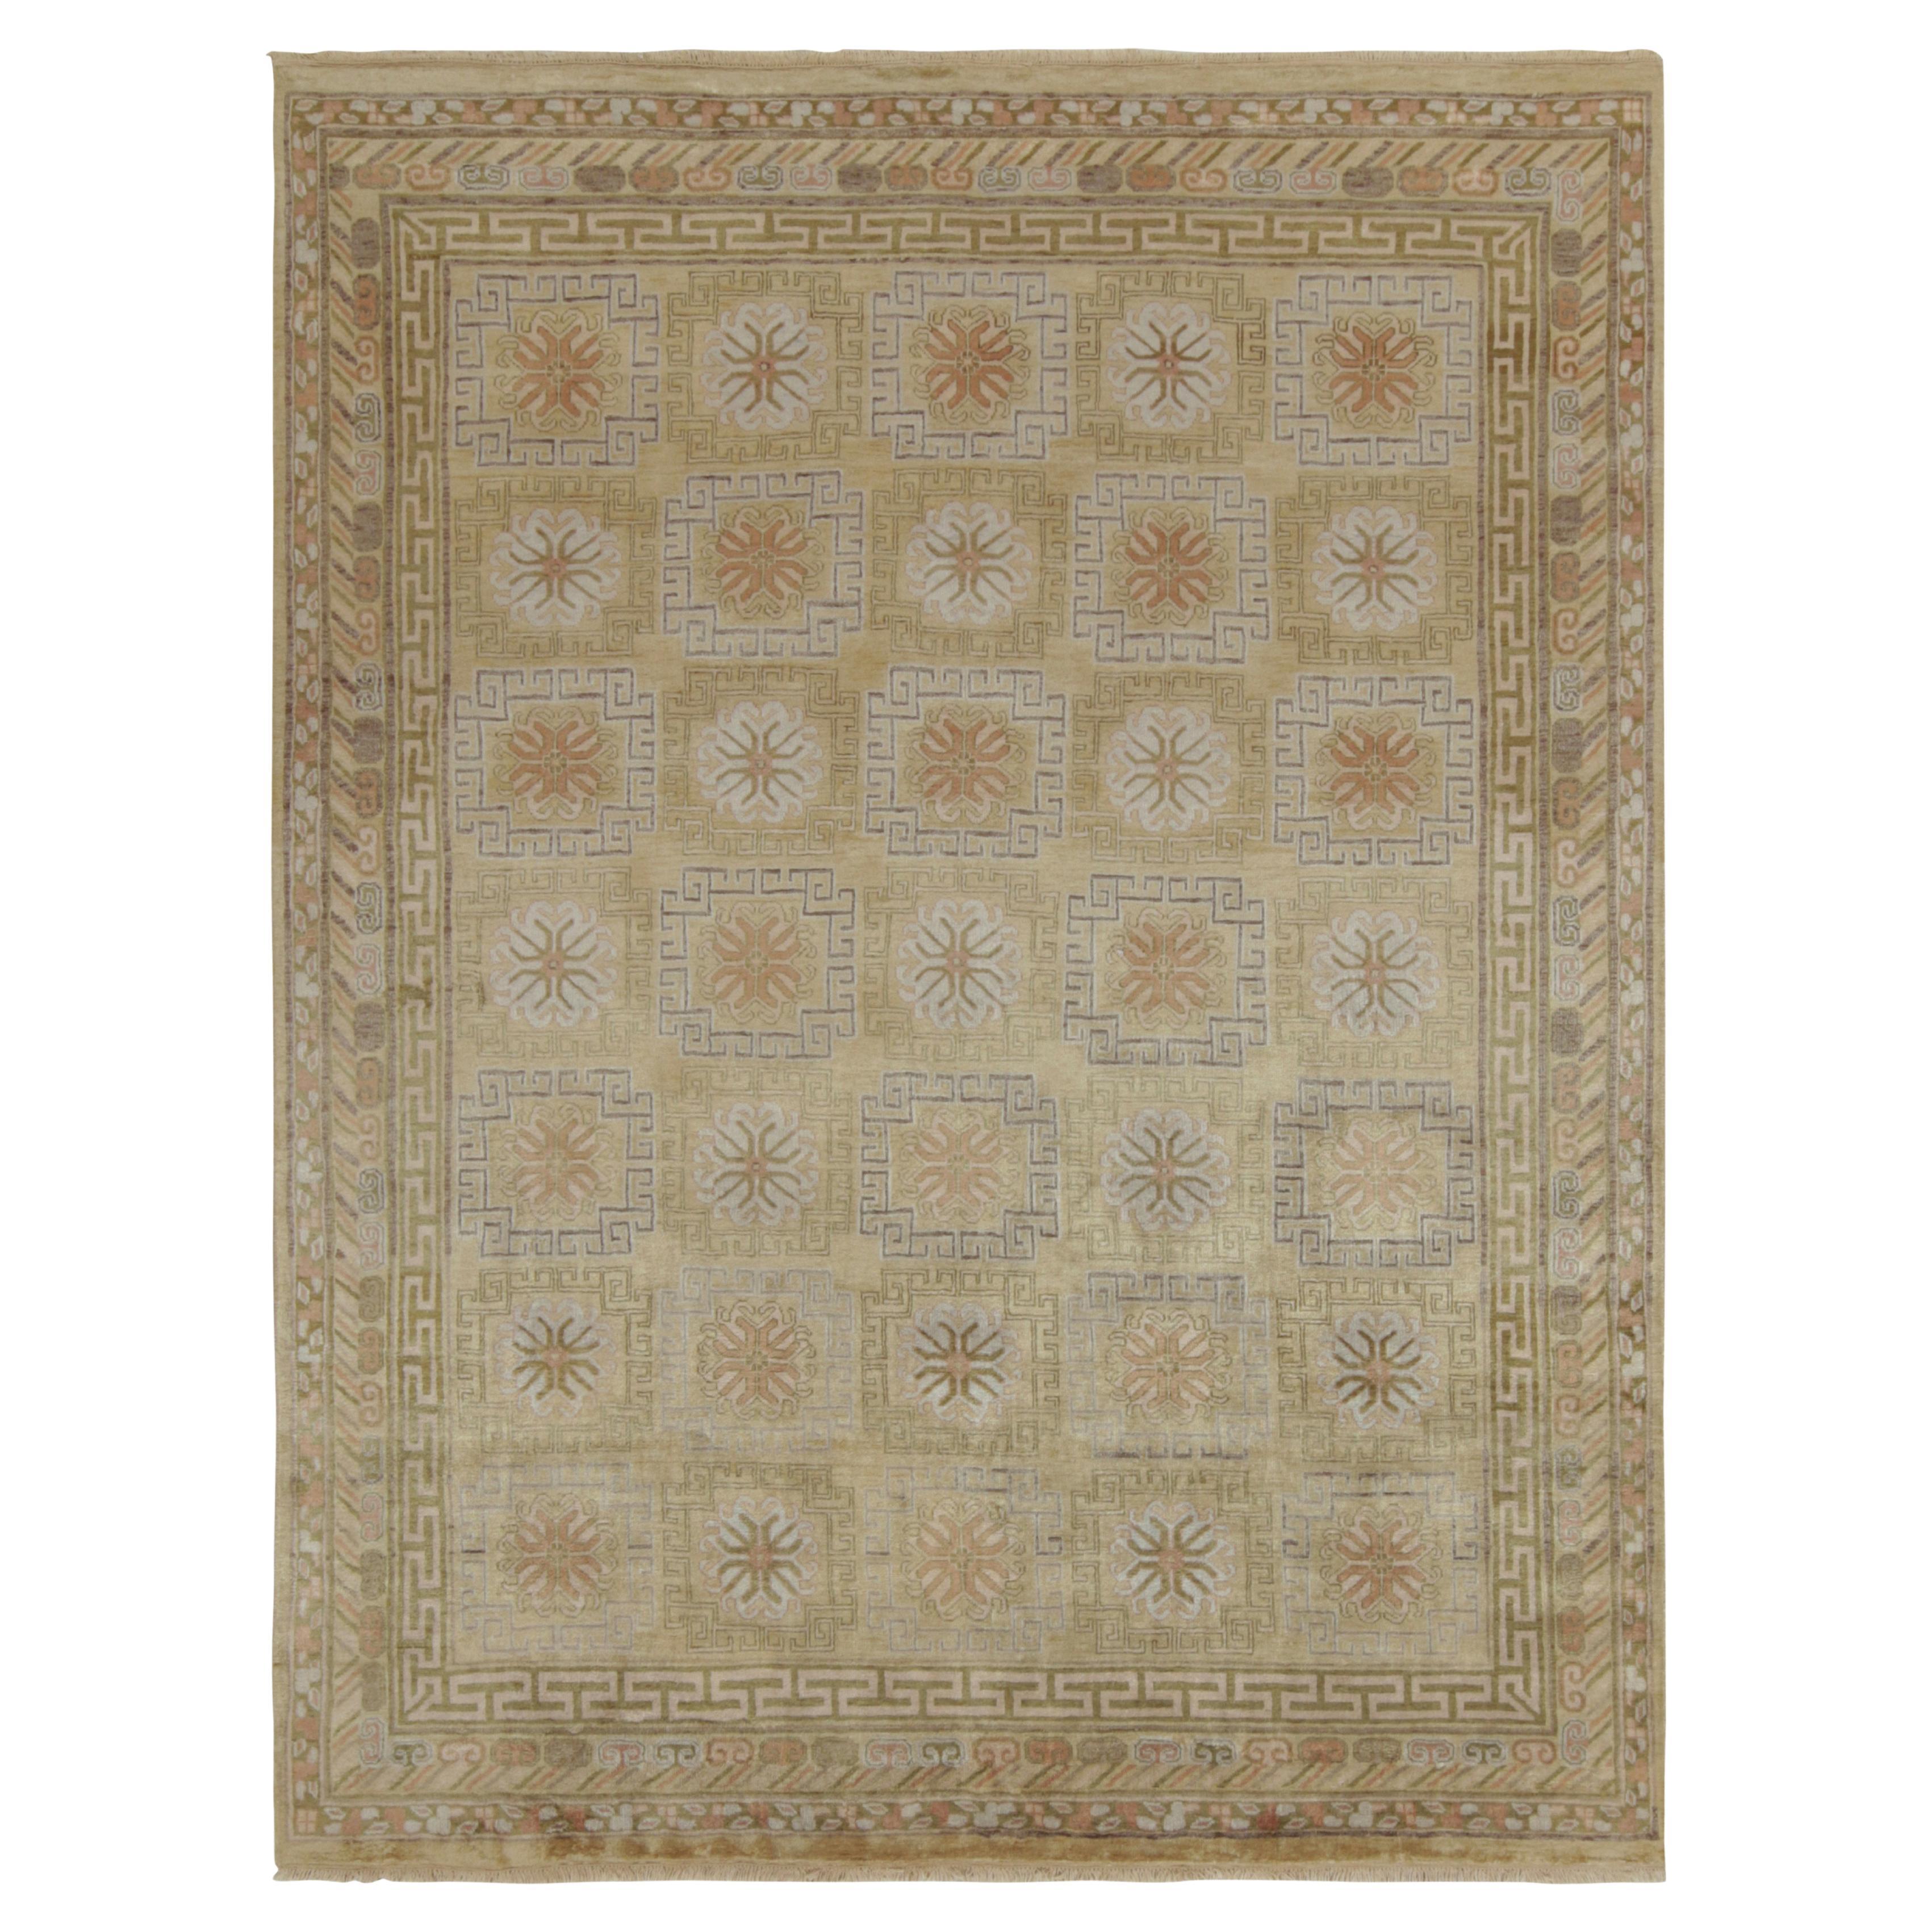 Teppich & Kilims Antiker Teppich im Khotan-Stil mit geometrischen Mustern in Gold & Beige-Brown